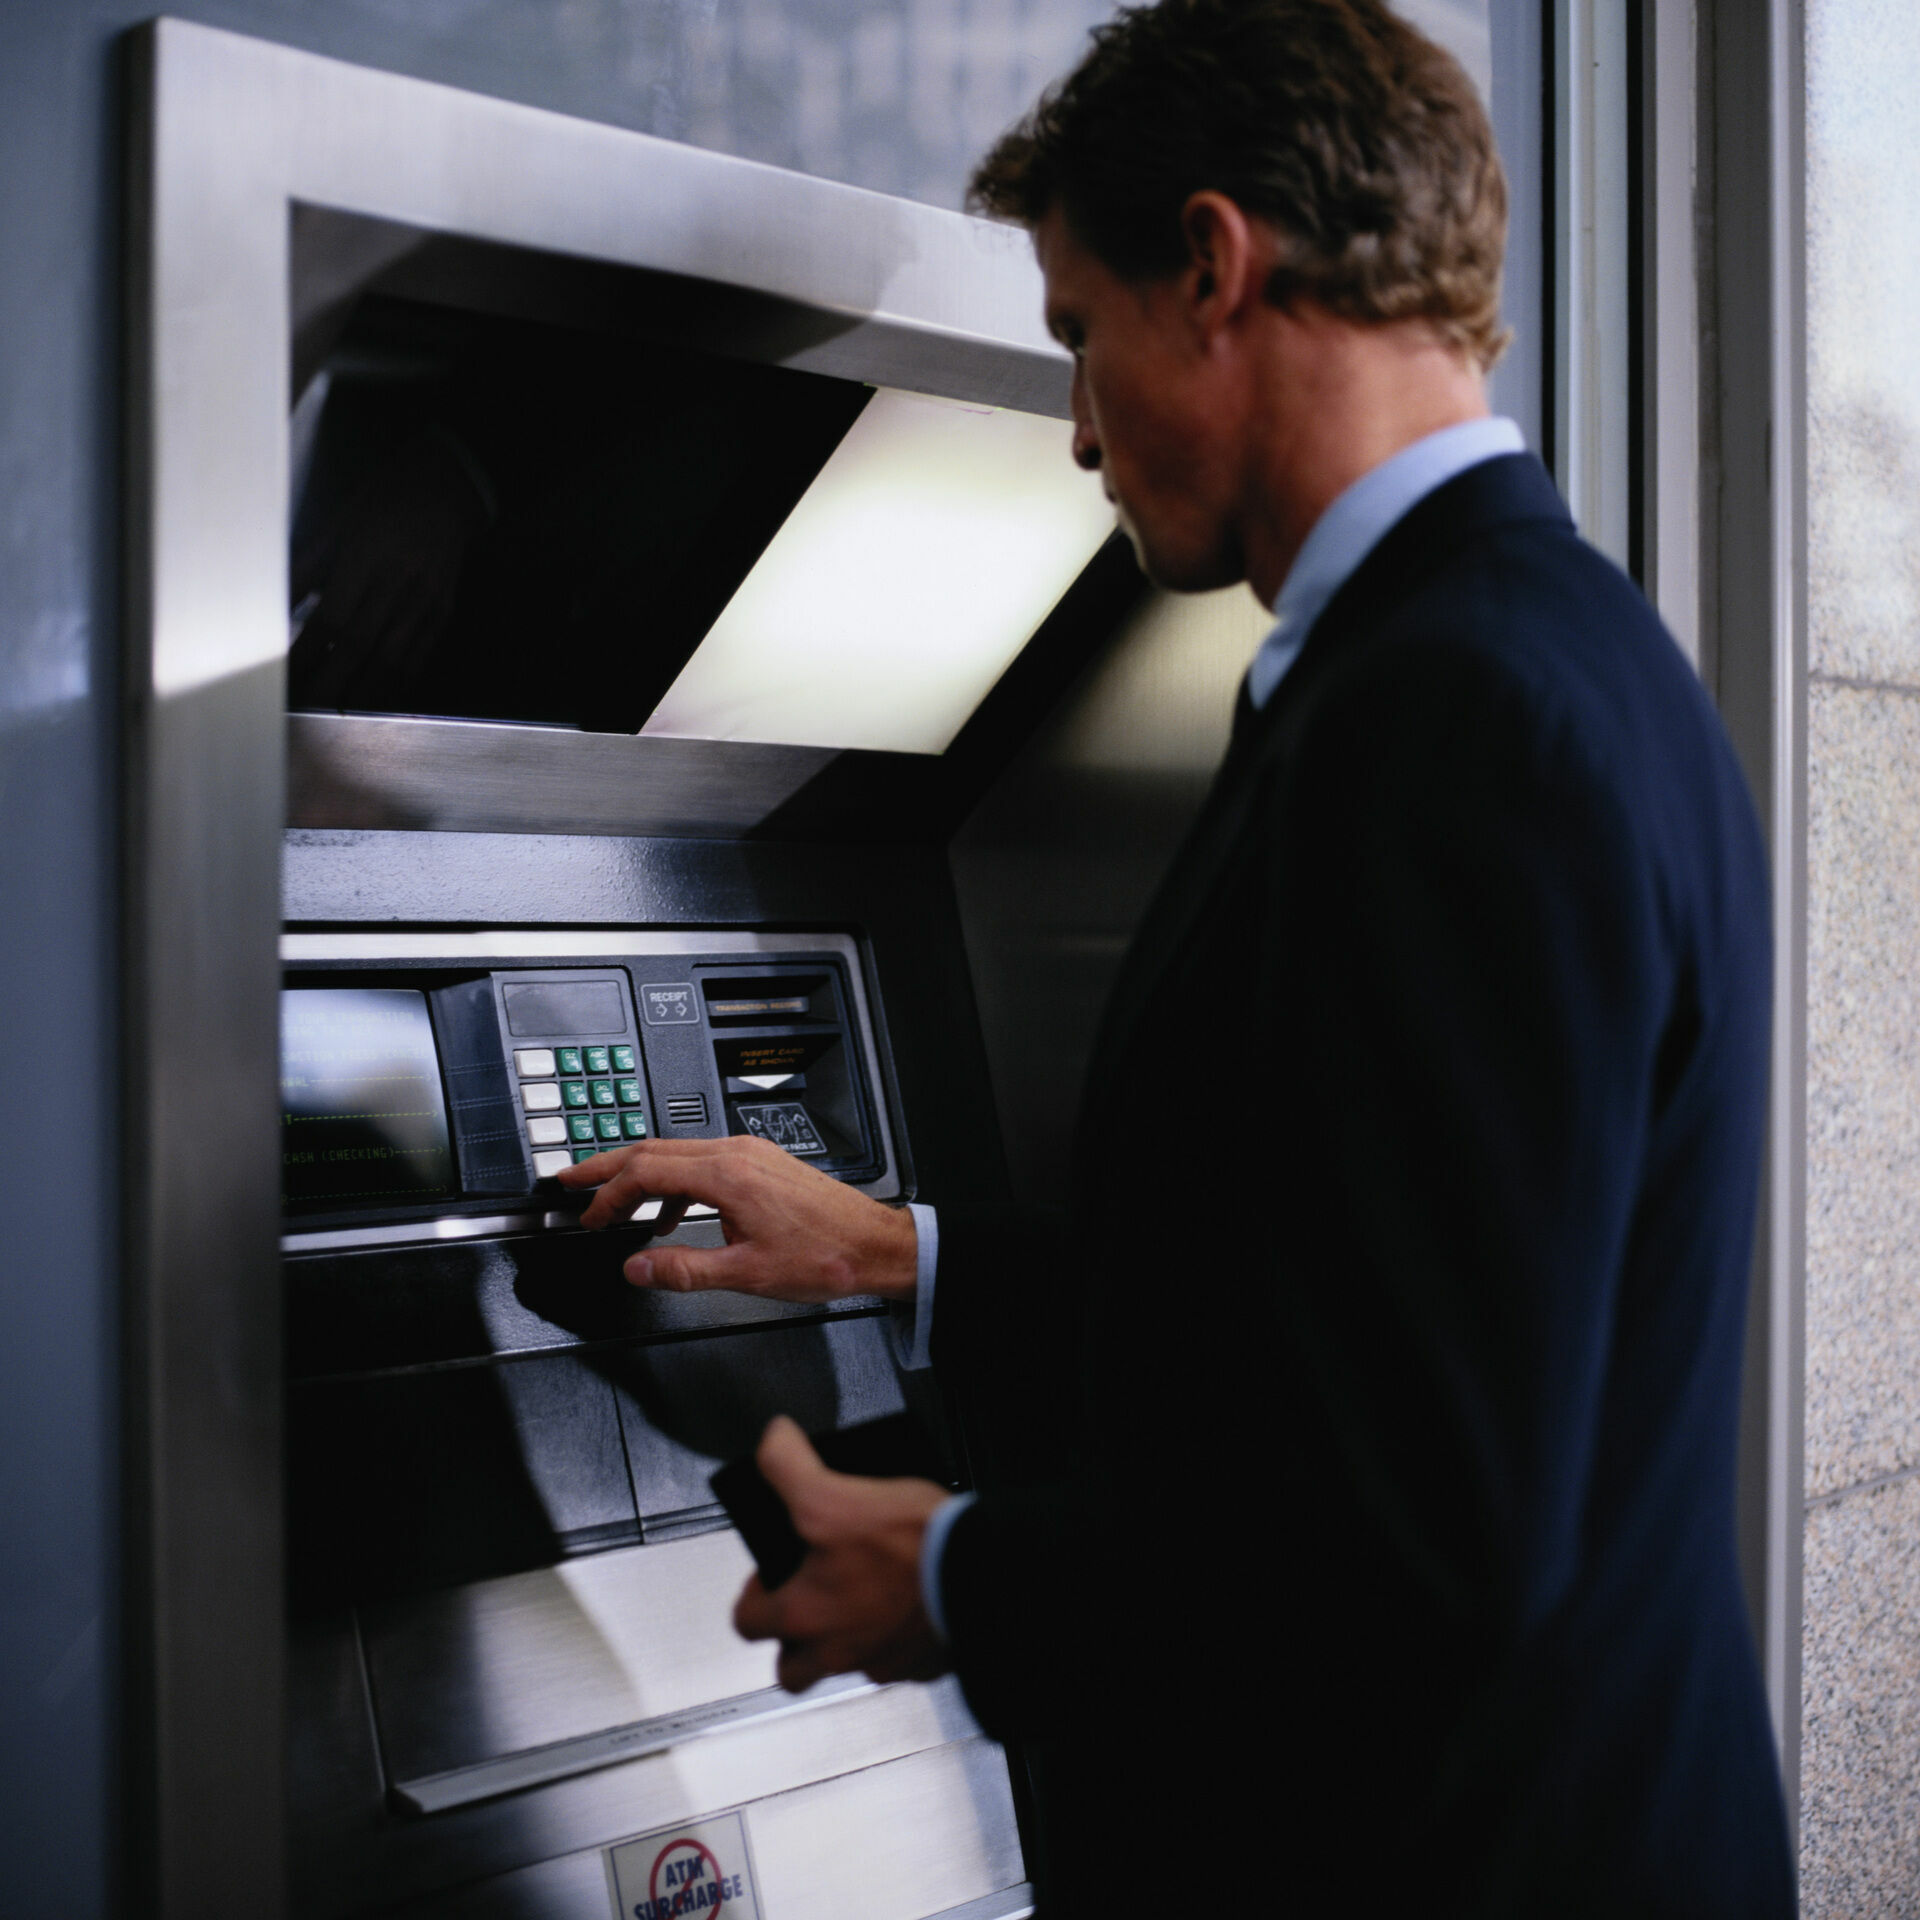 Система распознавания лиц в банкоматах будет бороться за "трезвость"